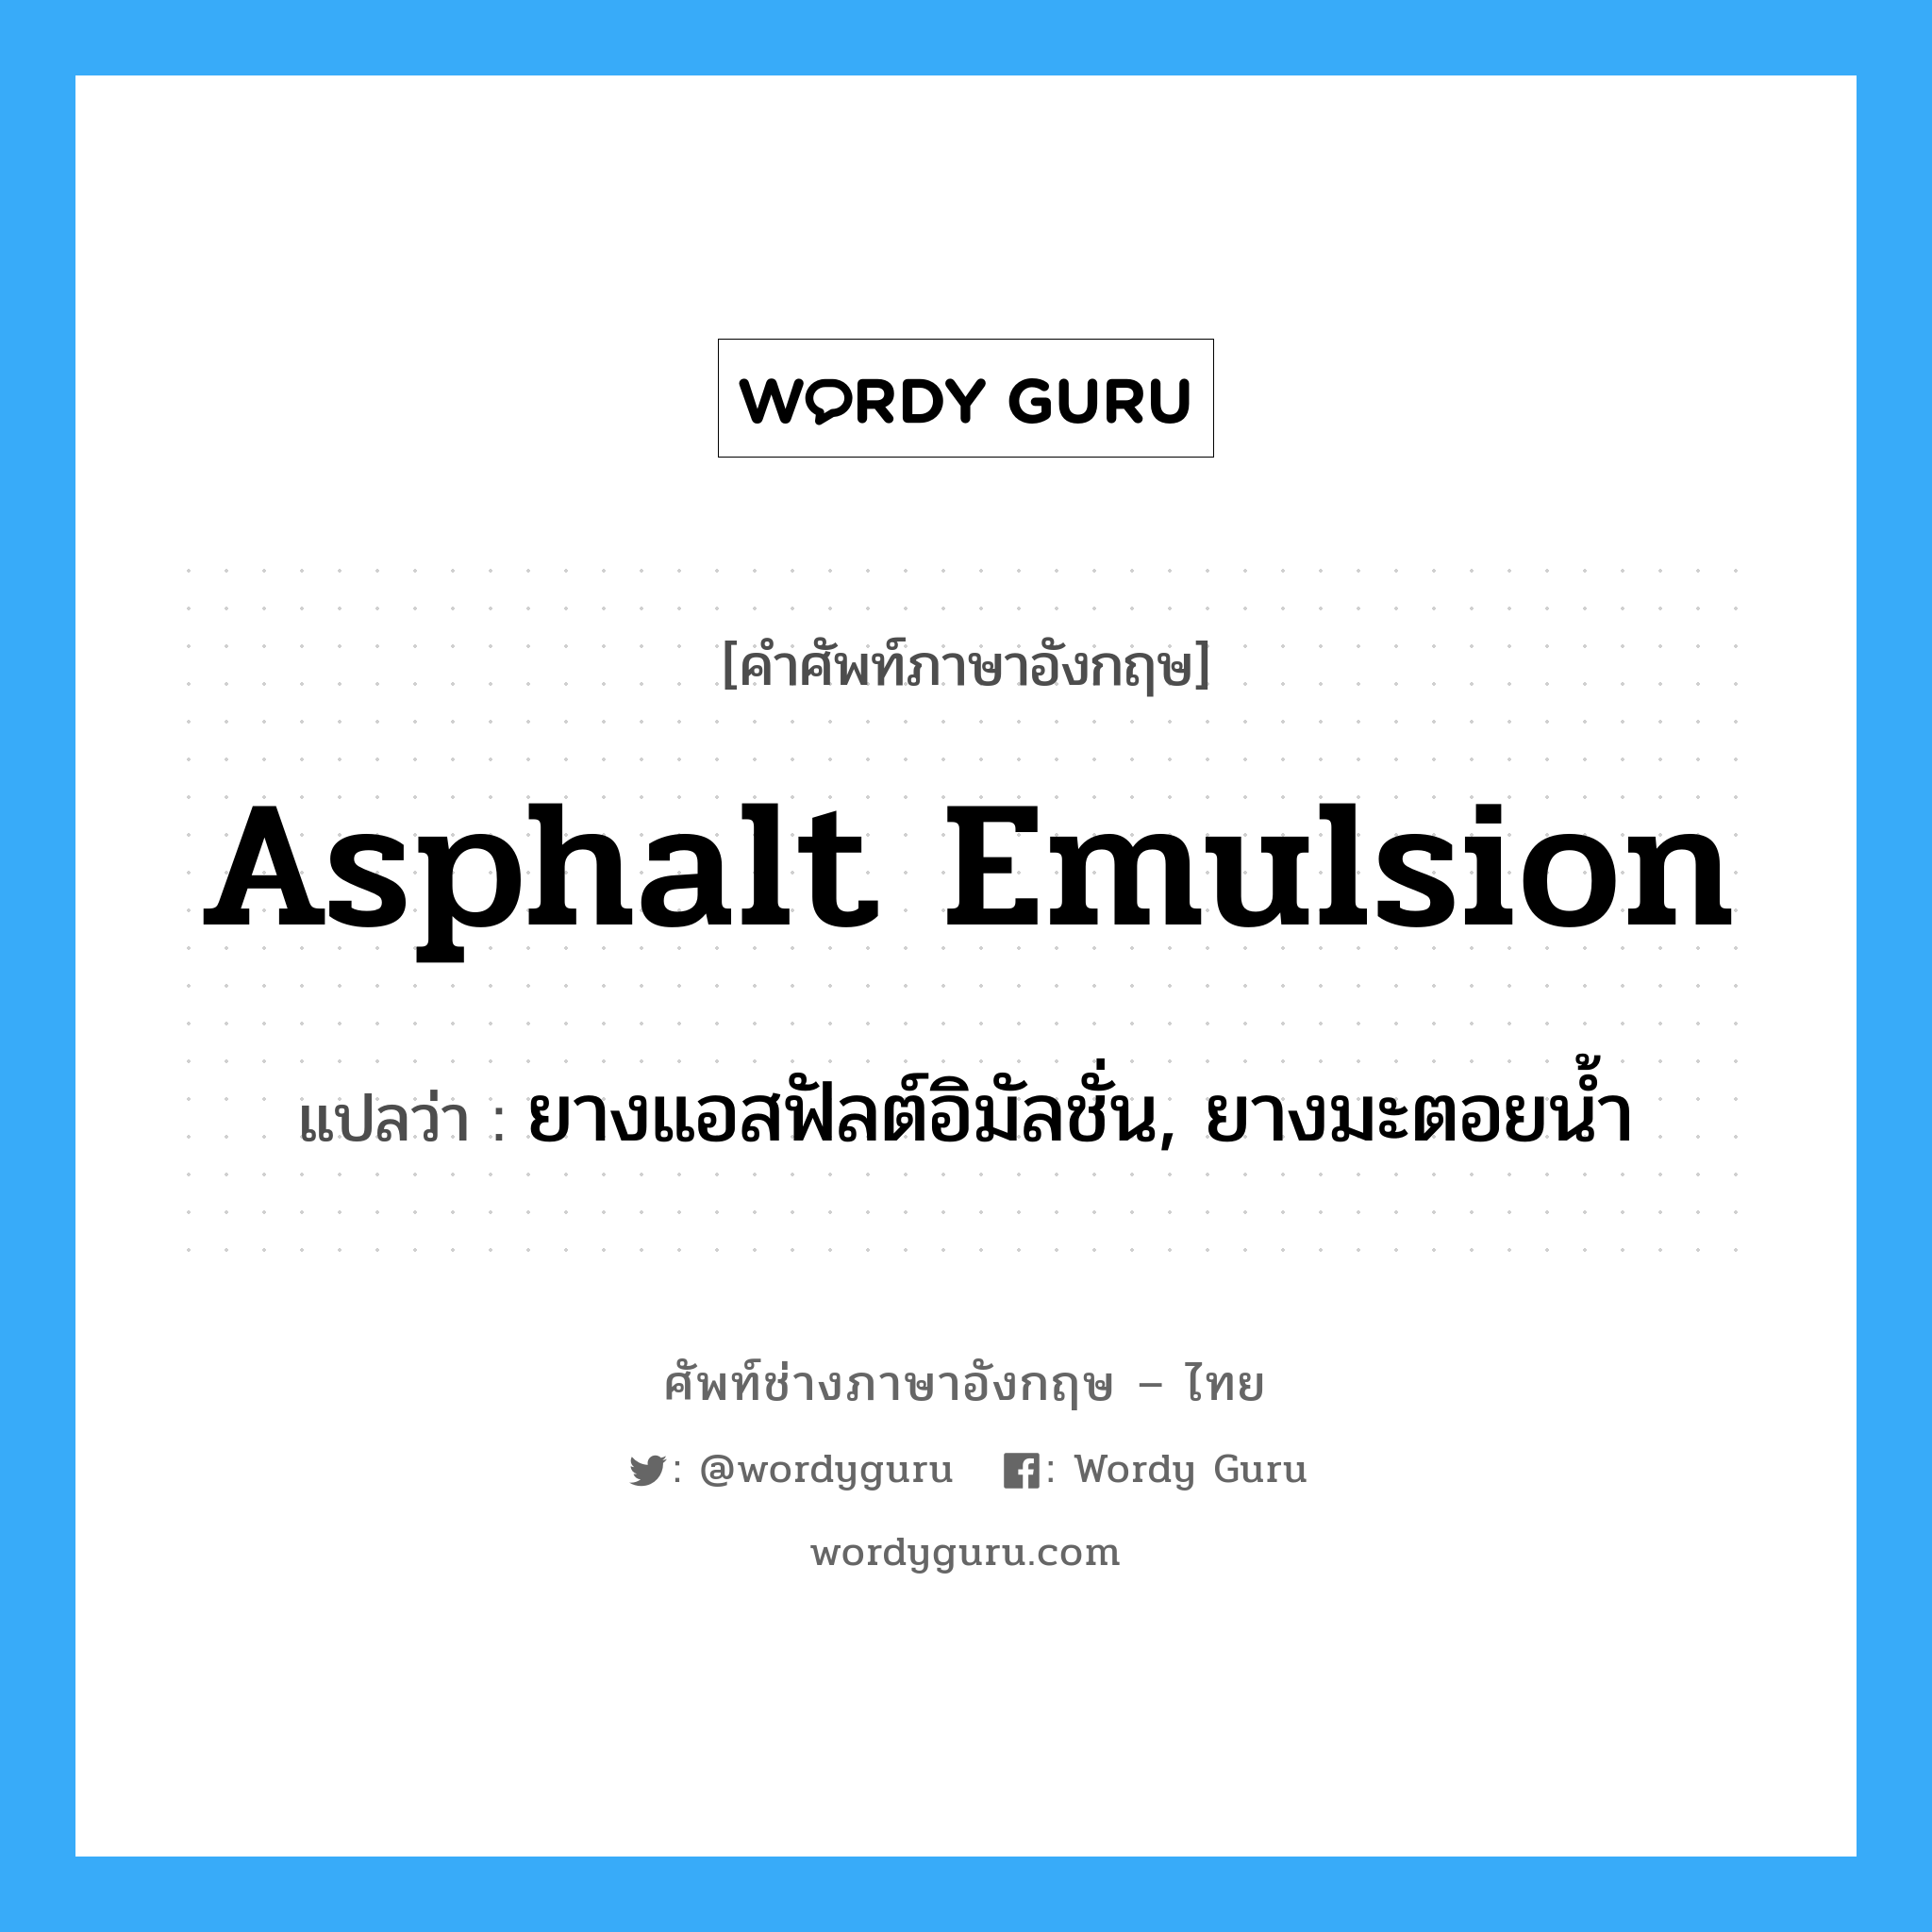 asphalt emulsion แปลว่า?, คำศัพท์ช่างภาษาอังกฤษ - ไทย asphalt emulsion คำศัพท์ภาษาอังกฤษ asphalt emulsion แปลว่า ยางแอสฟัลต์อิมัลชั่น, ยางมะตอยน้ำ